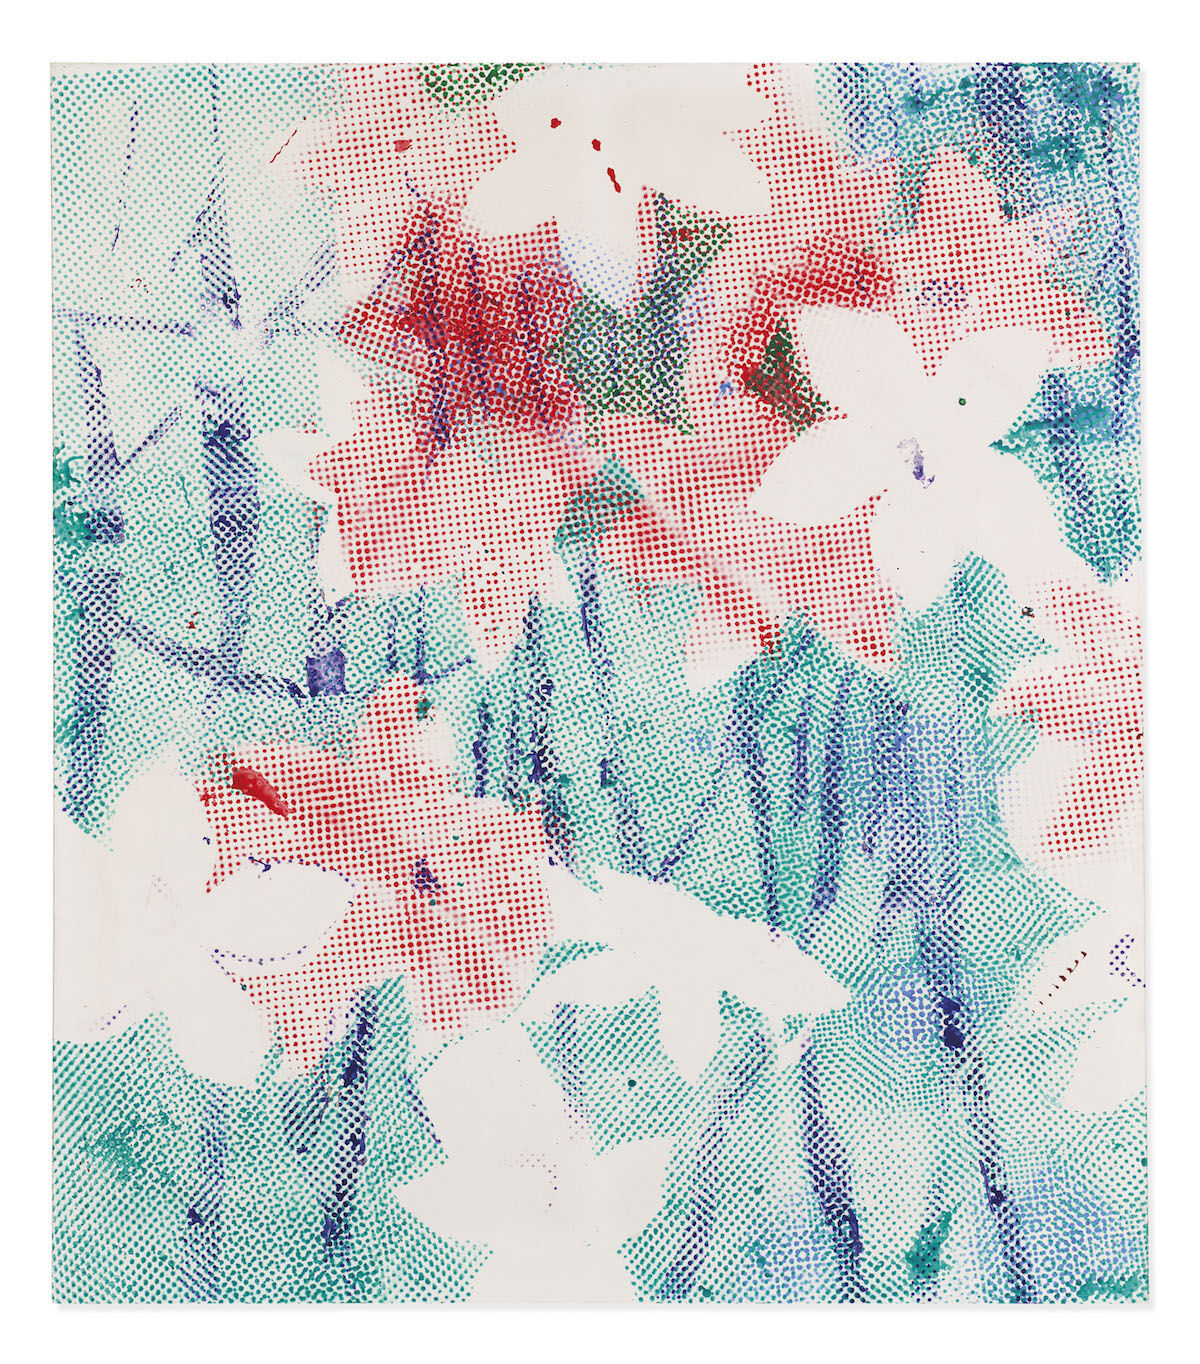 Sigmar Polke, Alpenveilchen/Flowers, 1967. Est. £5 million–£7 million ($6.2 million–$8.7 million). Courtesy Christie’s.